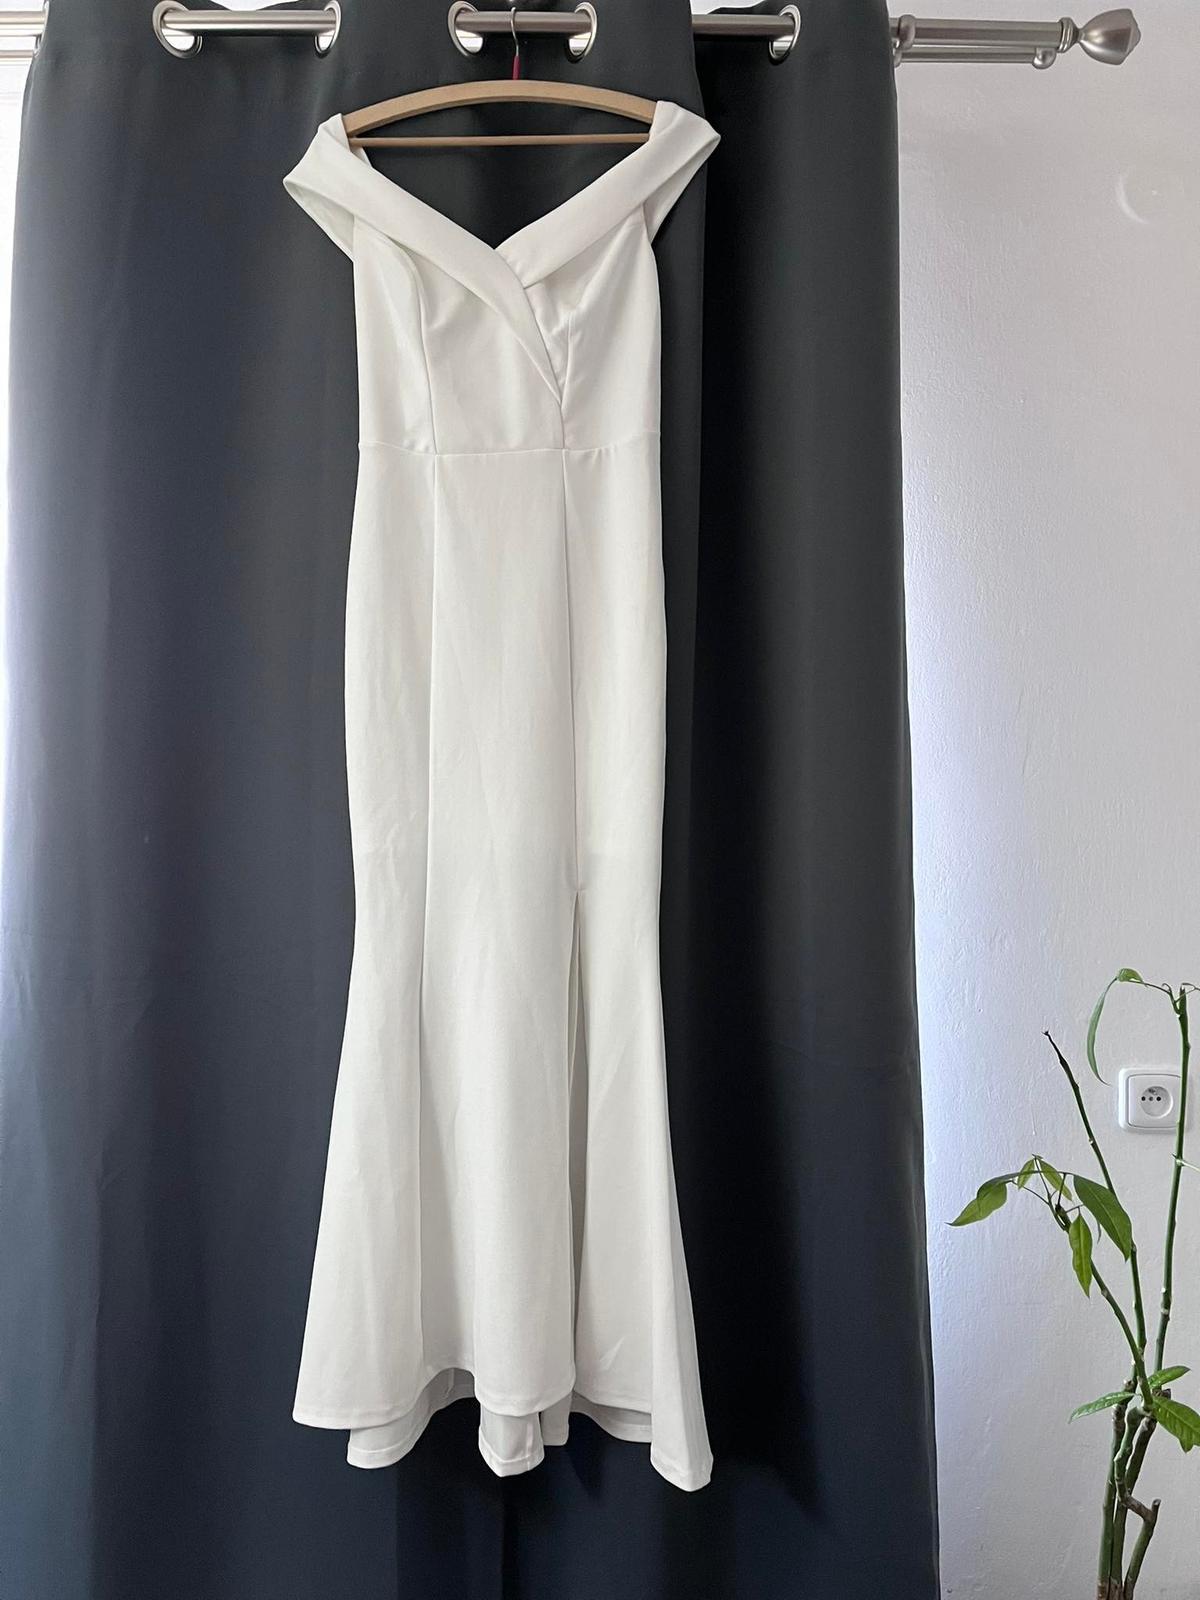 Bílé šaty - Obrázek č. 1